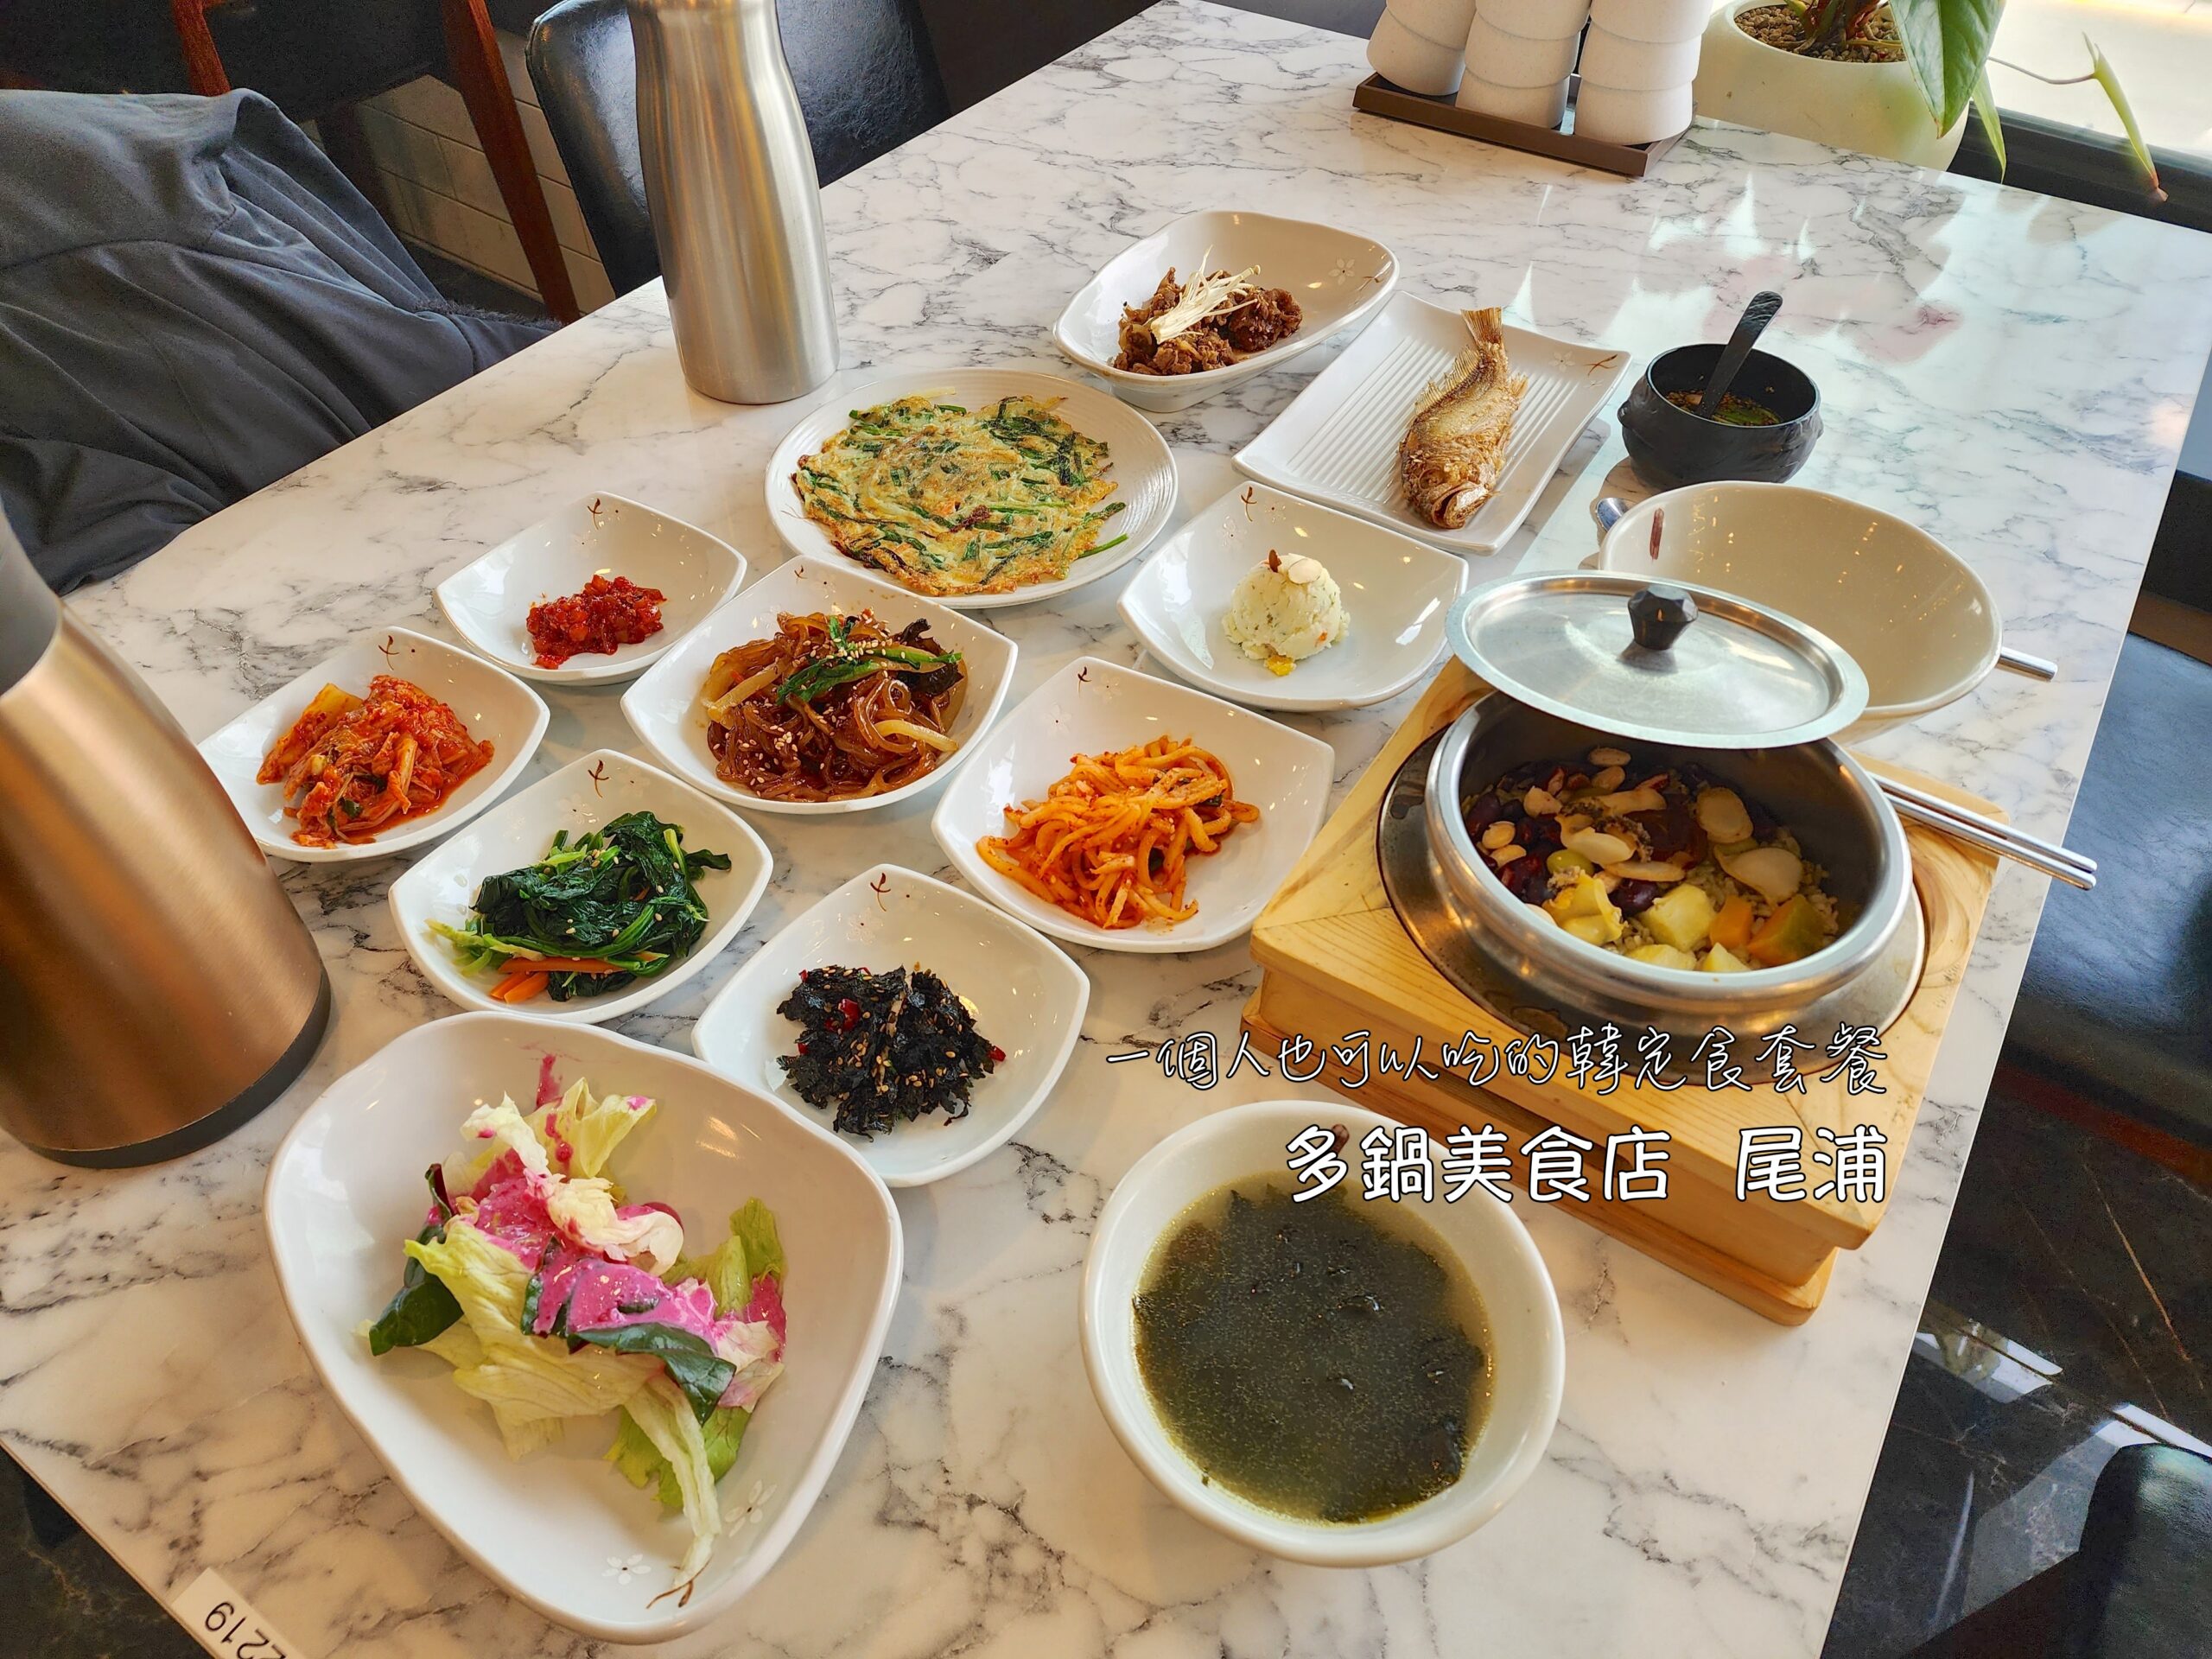 東廟,炸雞,美食,韓國,首爾 @Helena's Blog